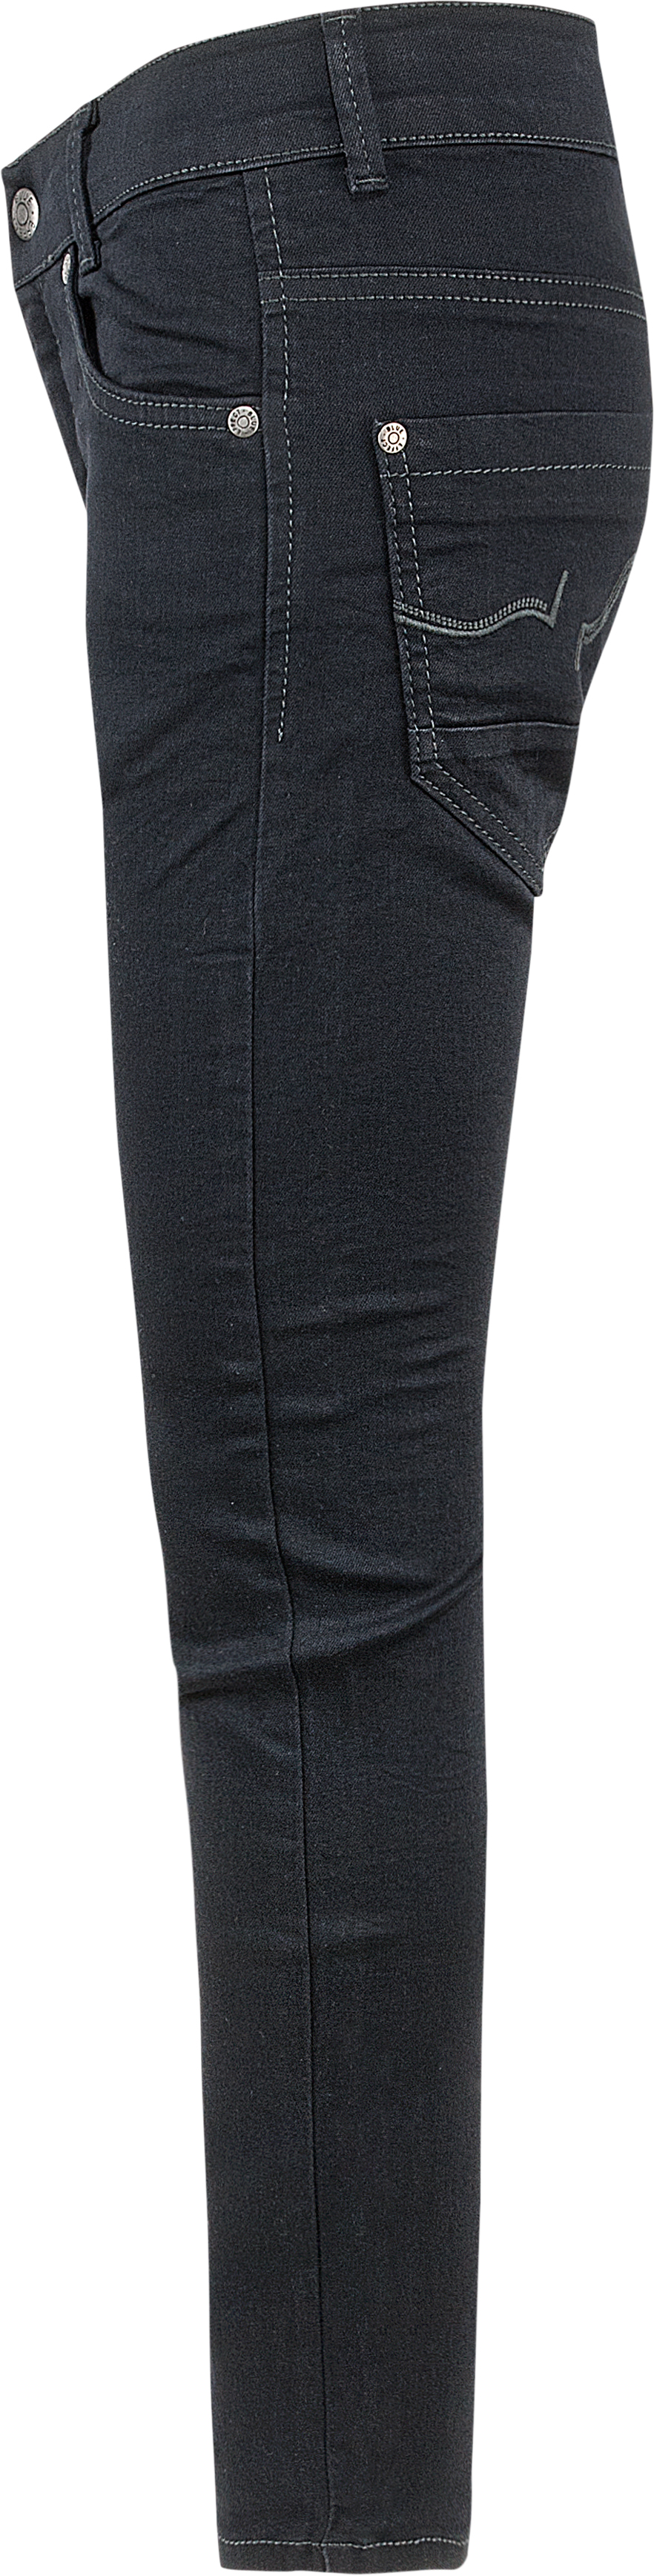 0202-NOS Boys Jeans Skinny verfügbar in Slim,Normal,Wide